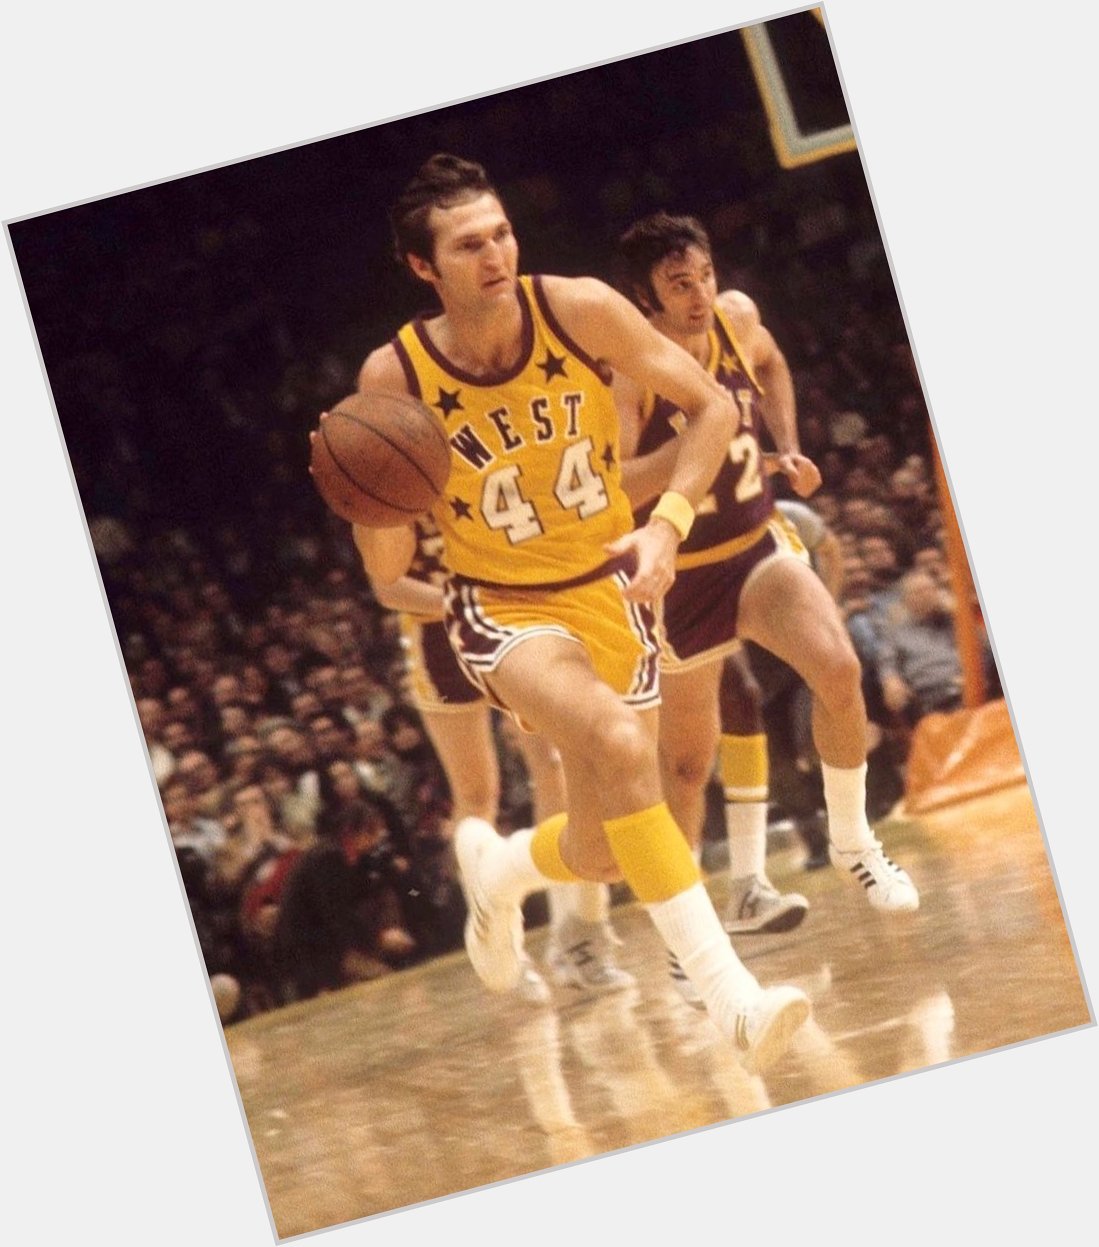 Happy 83rd Birthday to 14x & 1972 Kobe Bryant MVP, JERRY WEST! 